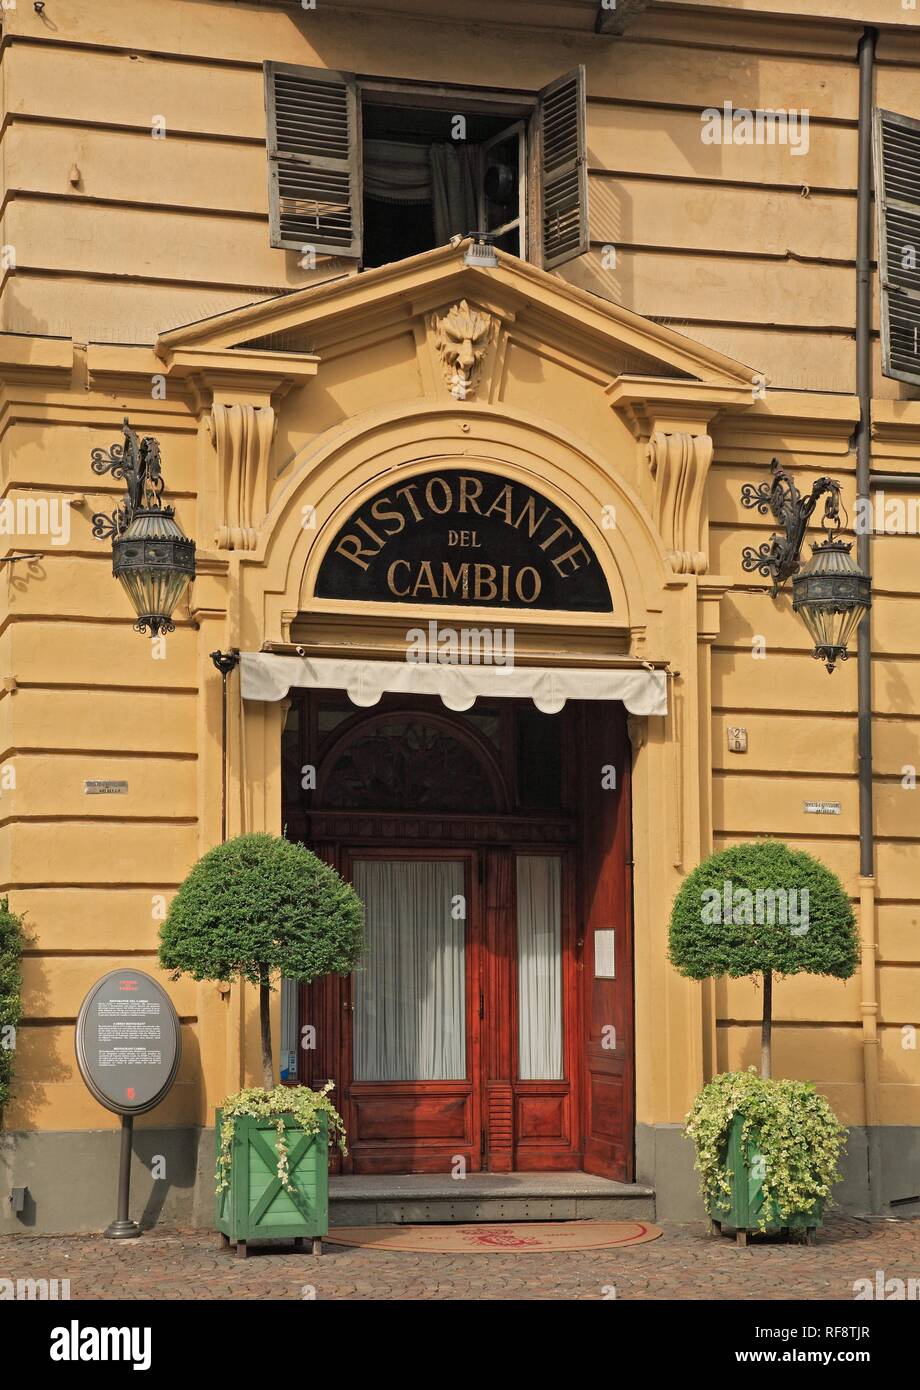 Luxury restaurant, Ristorante del Cambio at the Piazza Carignano, Turin, Piedmont, Italy, Europe Stock Photo